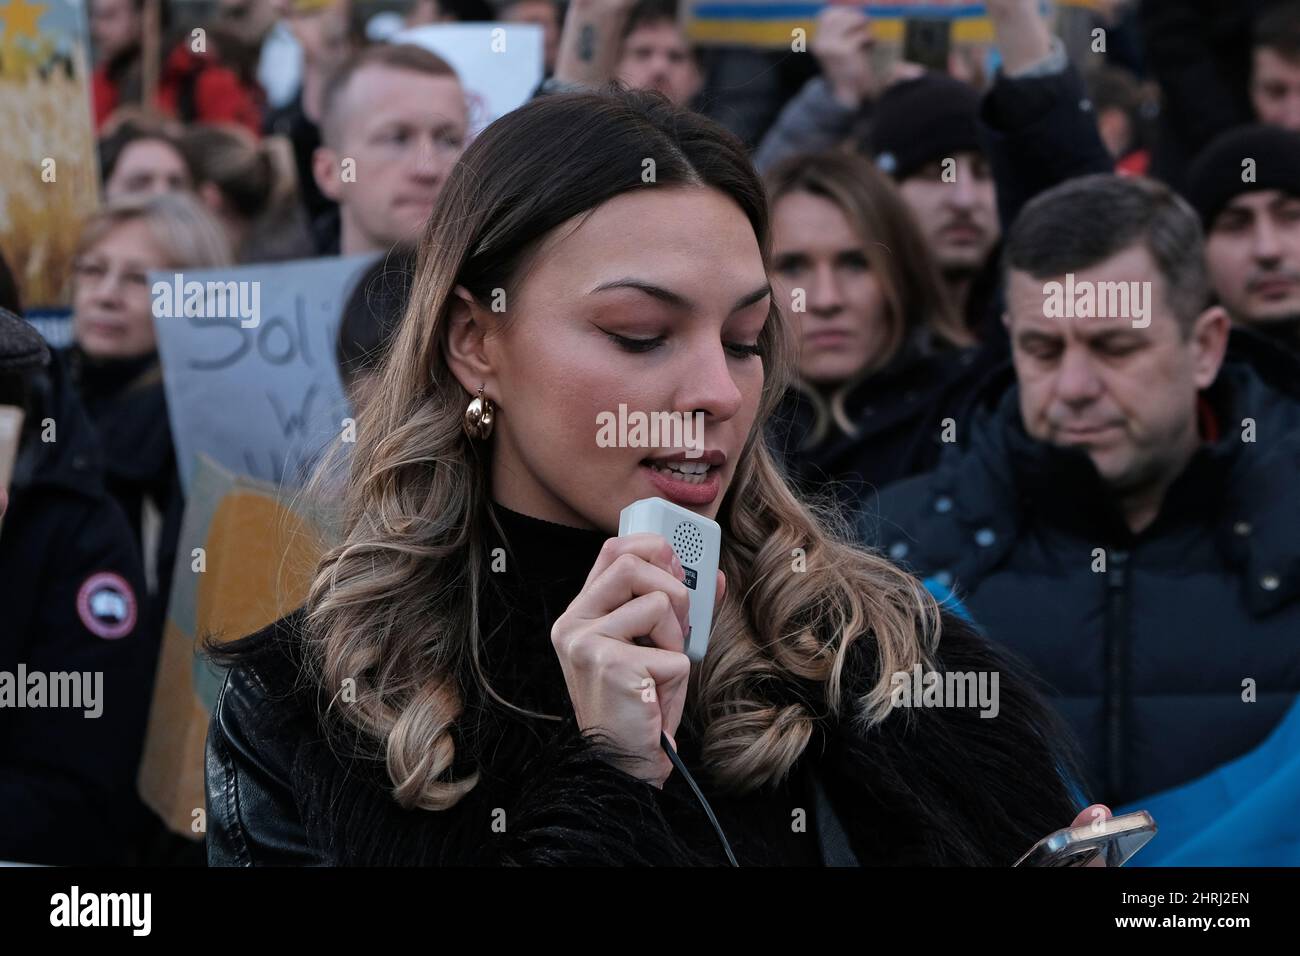 Parlando fuori - protesta (Paulina Thomson) che parla per protesta contro l'invasione russa dell'Ucraina. Foto Stock